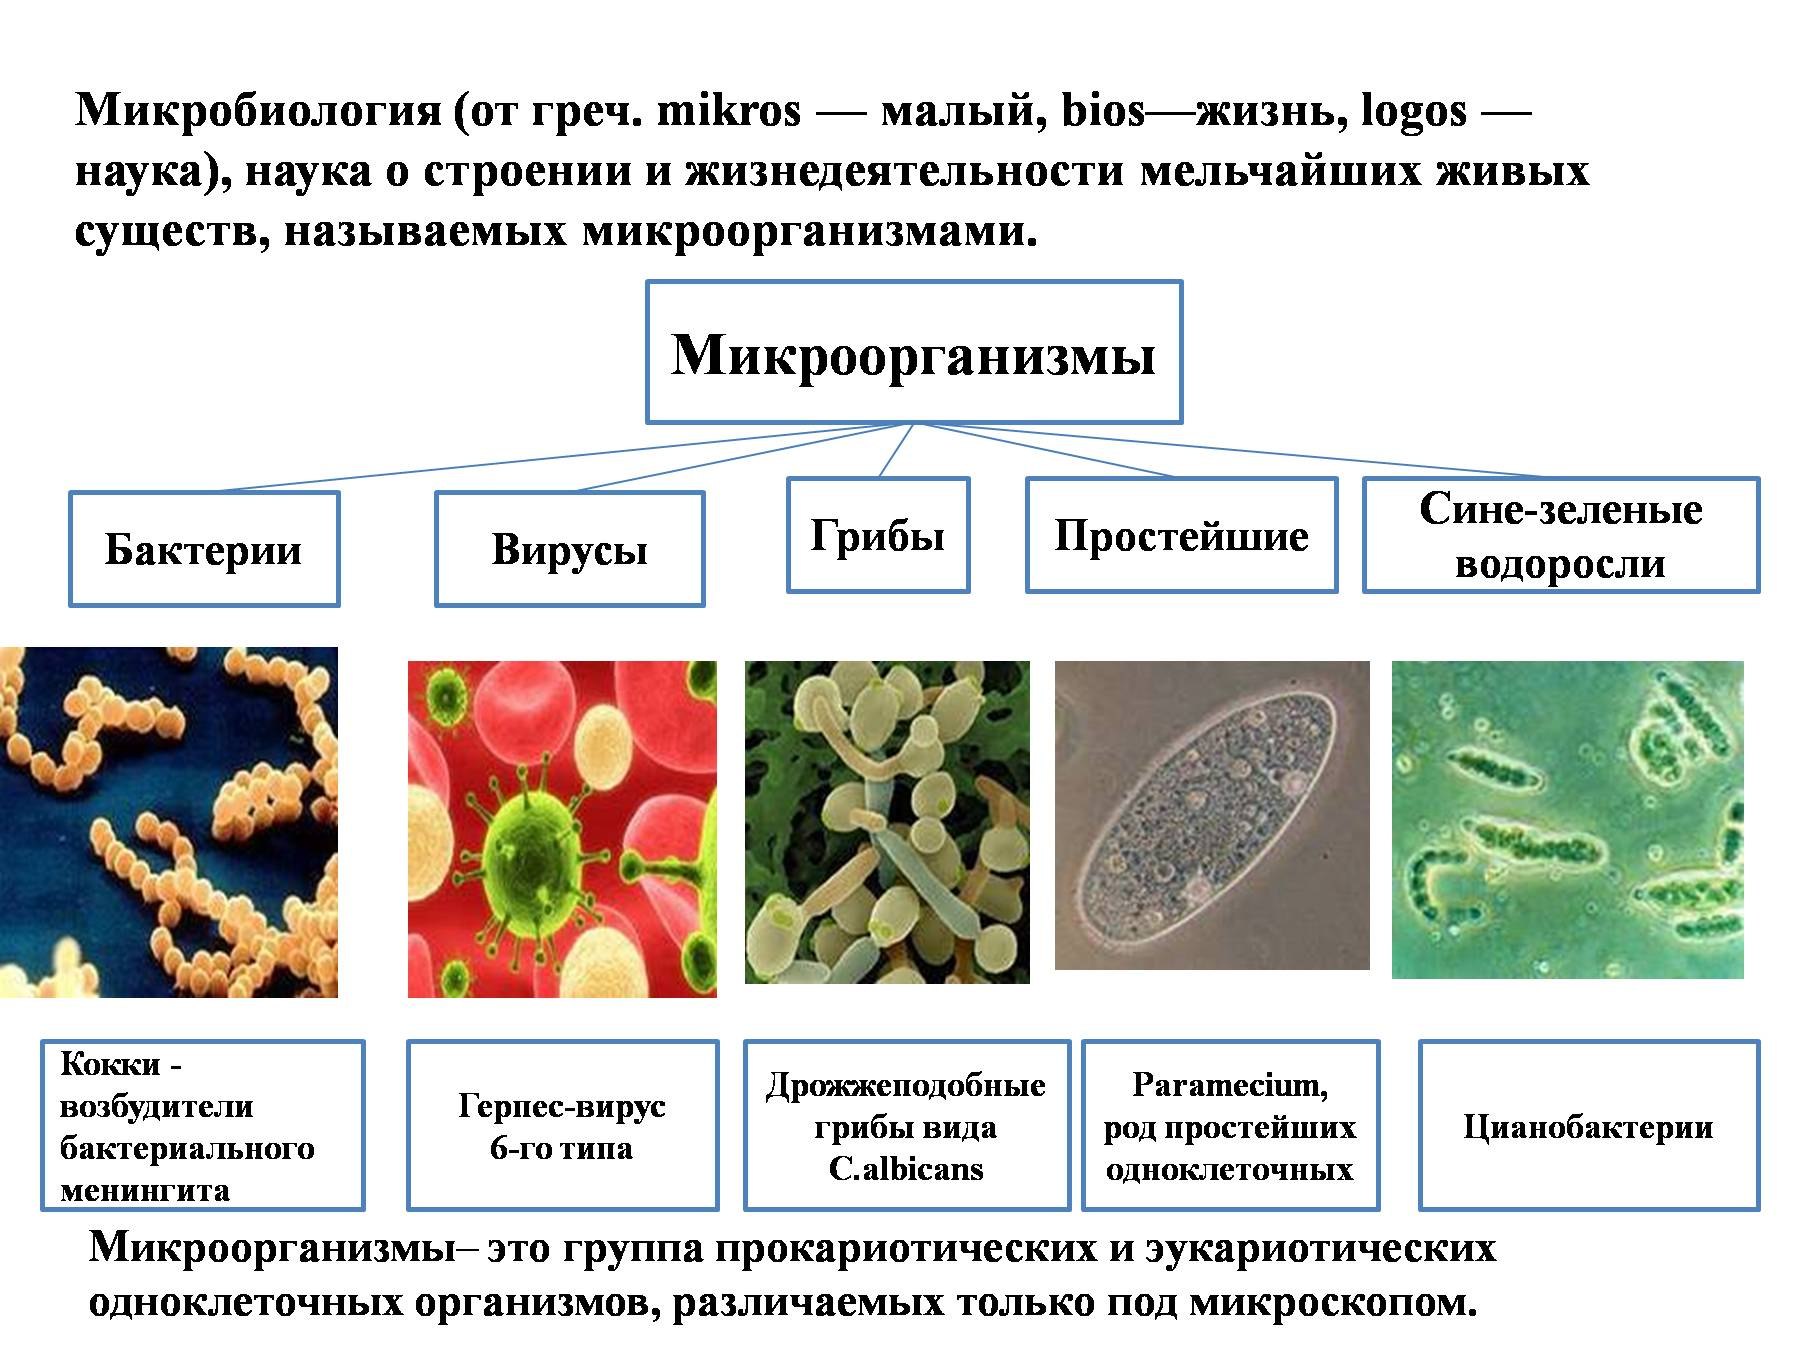 Почему бактерии вирусы одноклеточные водоросли. Строение микробов микробиология. Бактерии и вирусы таблица микробиология. Вирусы бактерии протисты. Классификация бактерий и вирусов.